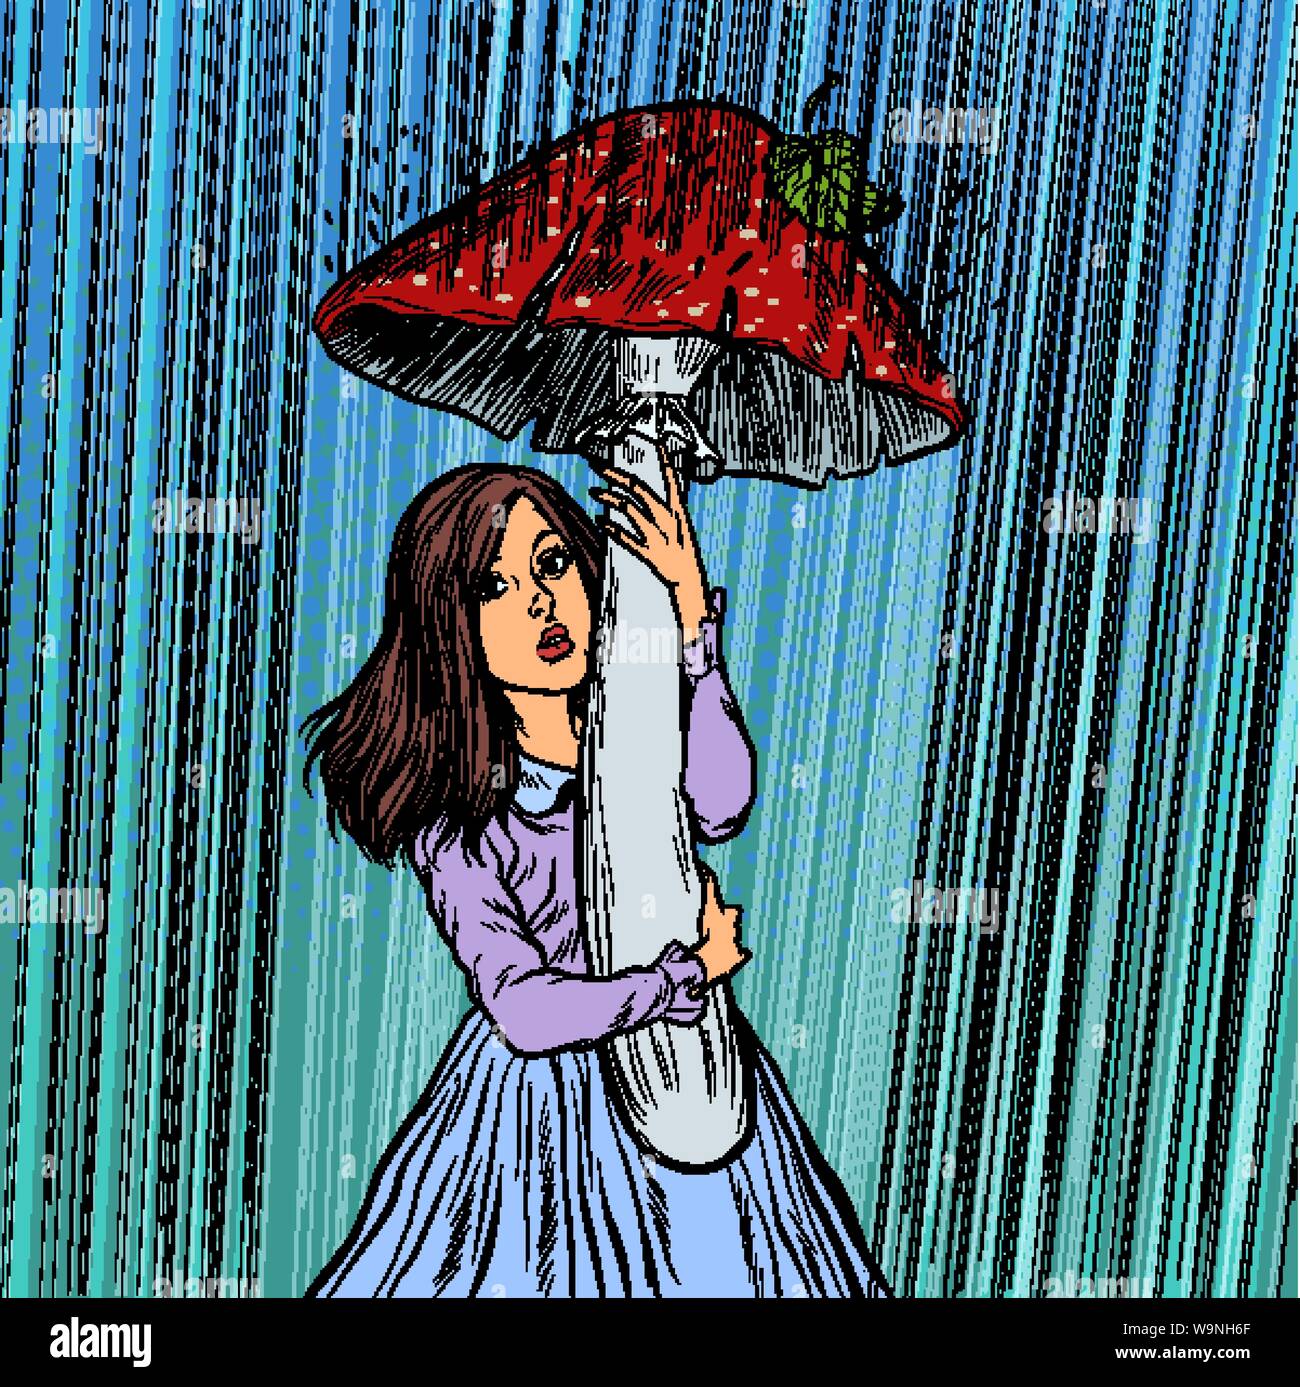 Mädchen im Regen versteckt unter einem Pilz Stock Vektor